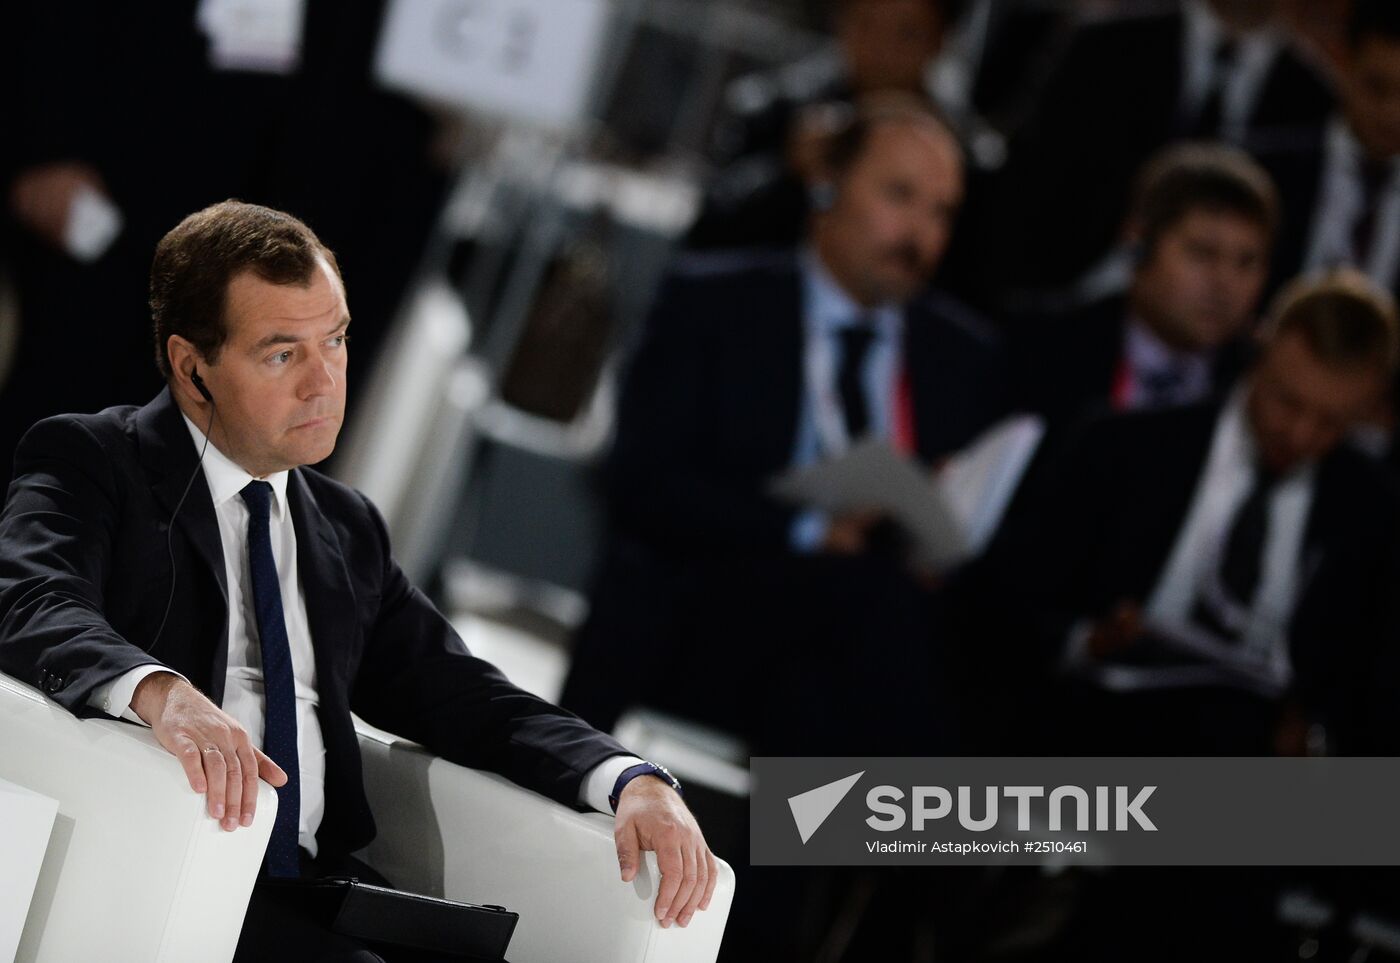 Dmitry Medvedev, Li Keqiang attend Open Innovations forum